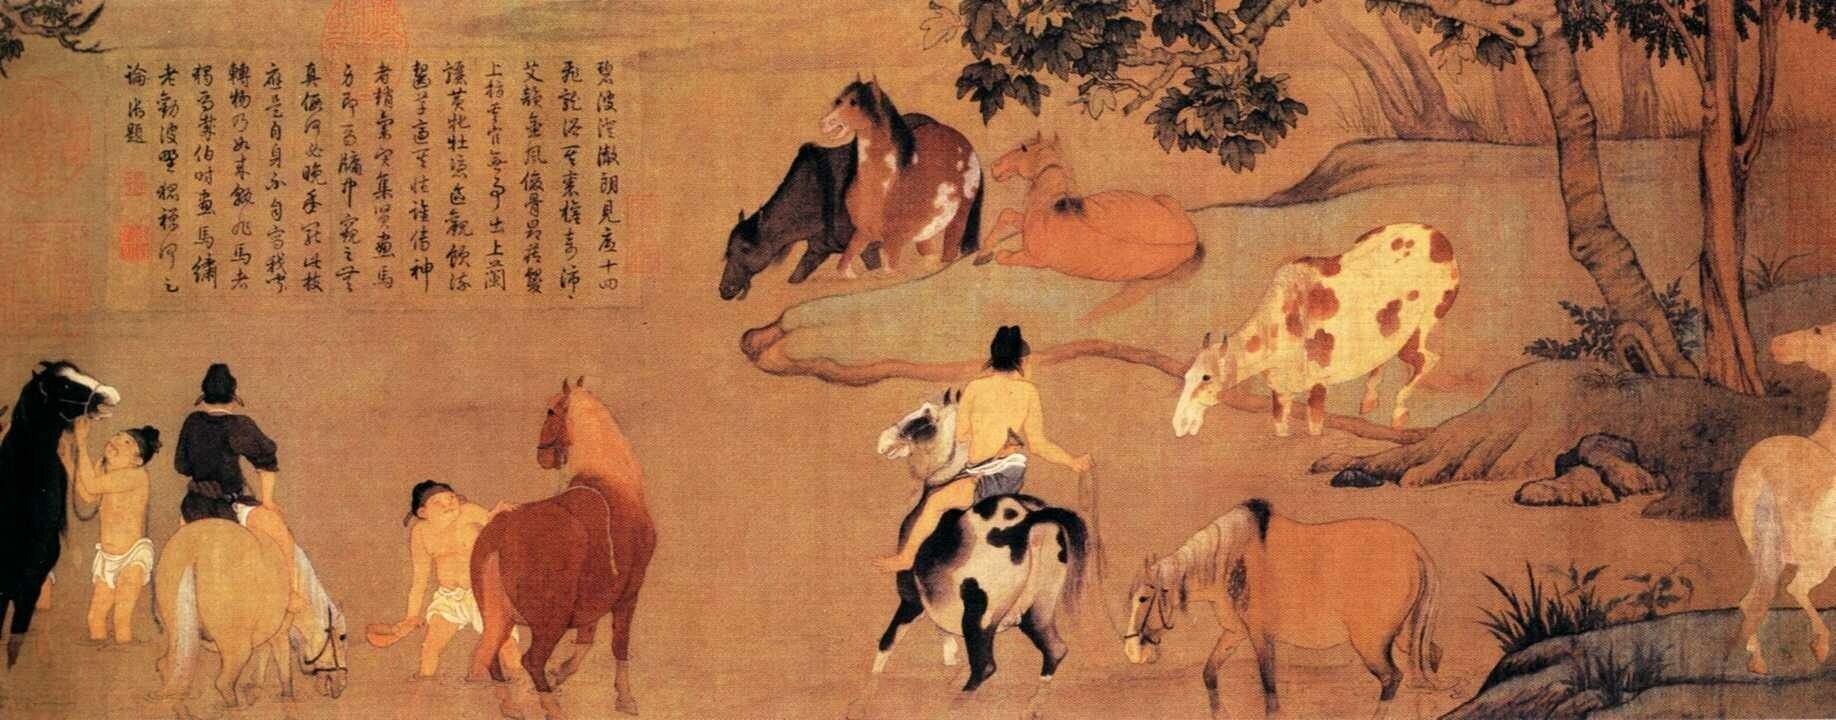 Тан и сун. Чжао Мэнфу. Живопись. Китайская живопись эпохи Тан. Китайская живопись Тан и Сун. Китайский художник Чжао Мэнфу.